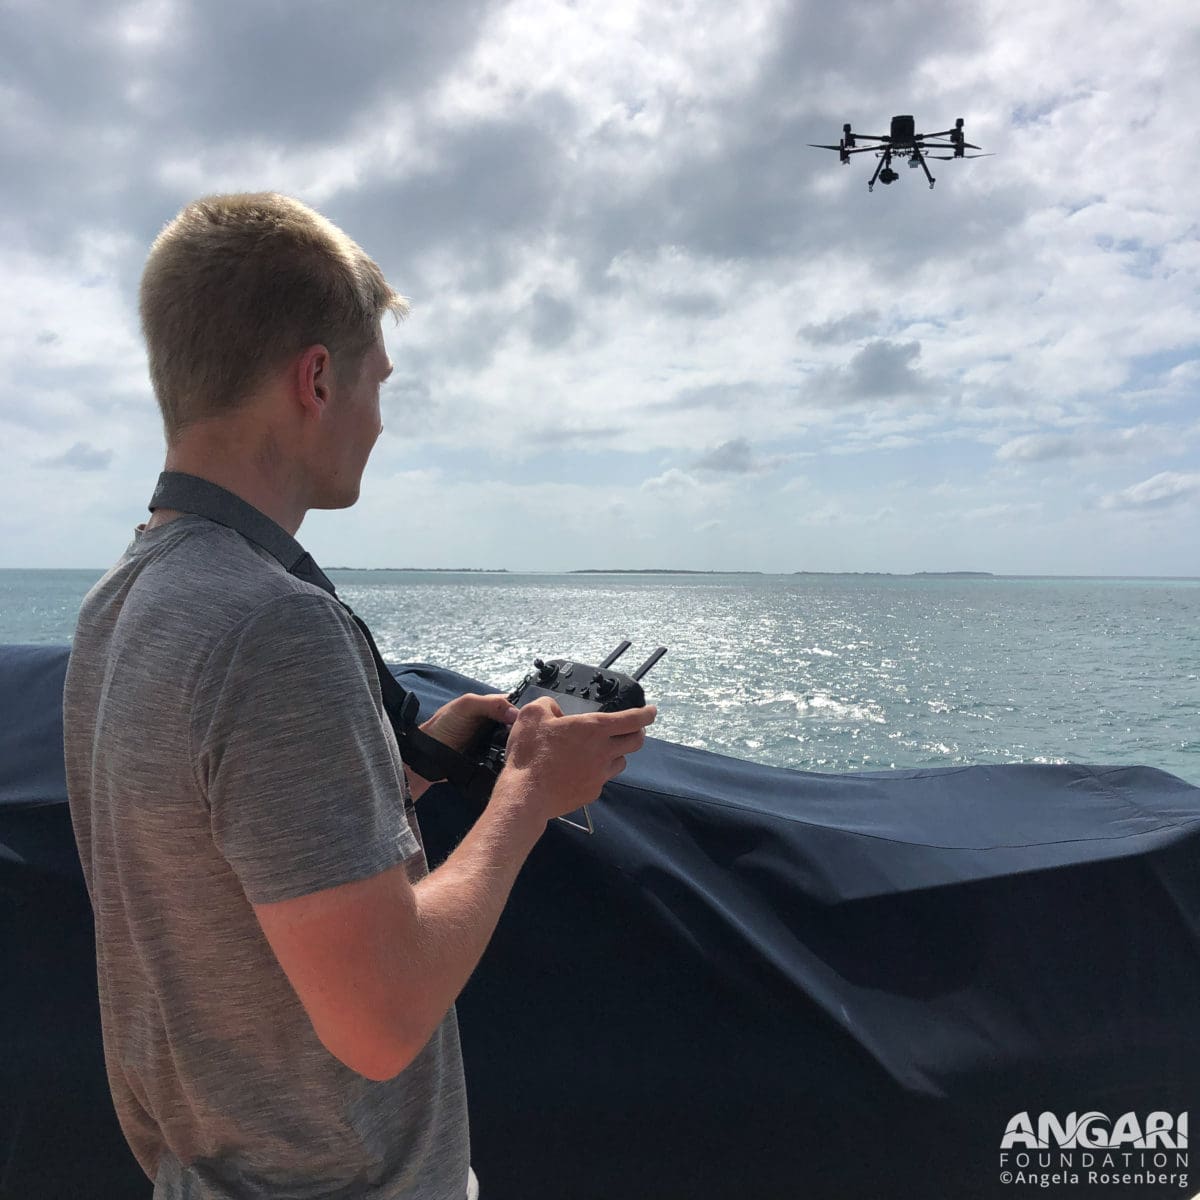 Flying my commercial drone for aerial surveys. PC: Angela Rosenberg